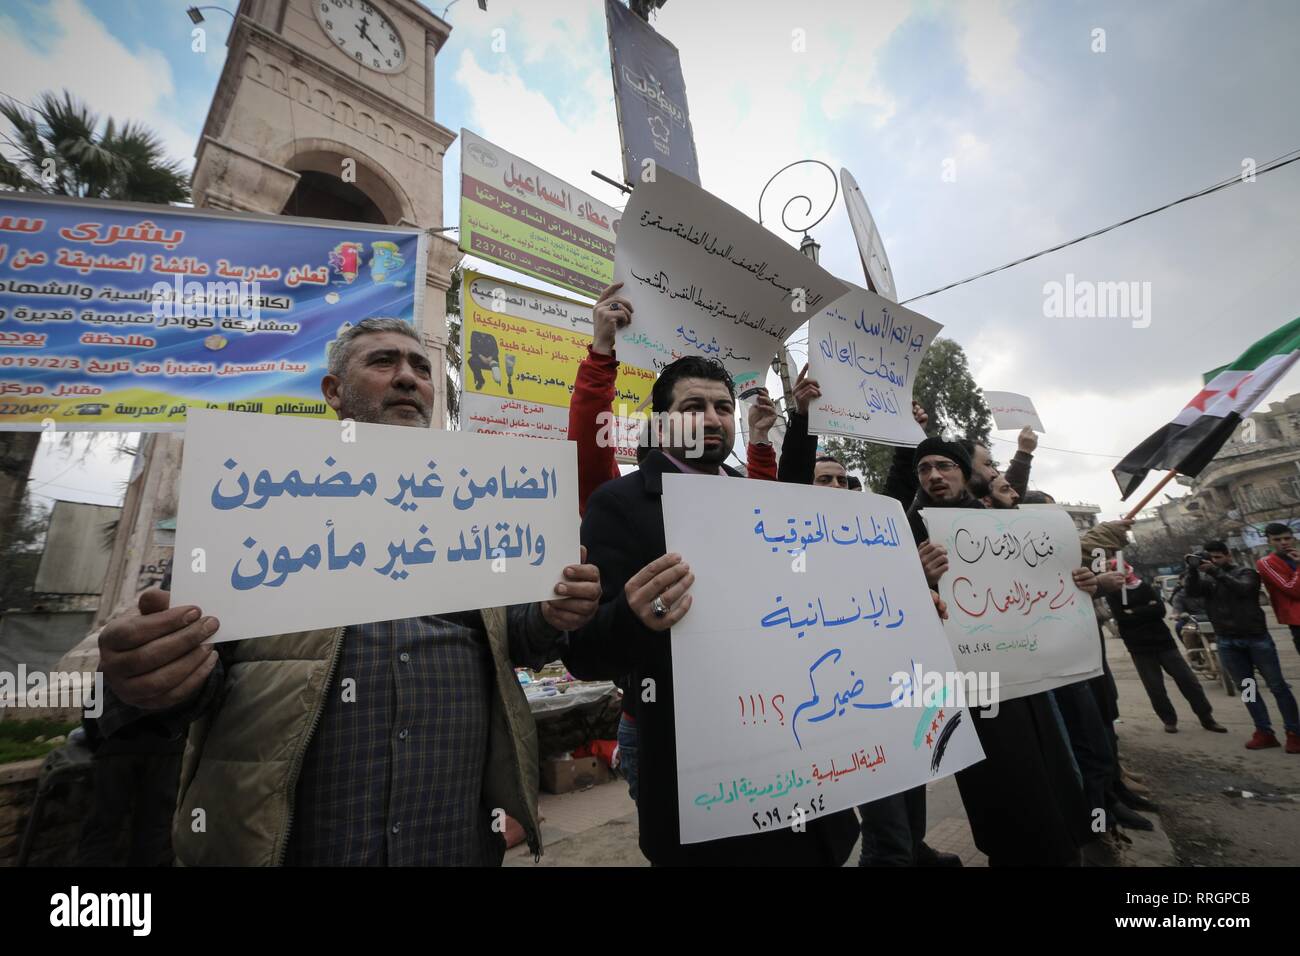 Les militants sont vu la tenue des pancartes pendant la manifestation. La population et les activistes de la ville d'Idlib, dénoncer le bombardement de villes et villages du sud d'Idlib et maintenir la responsabilité de la communauté internationale et la caution. Banque D'Images